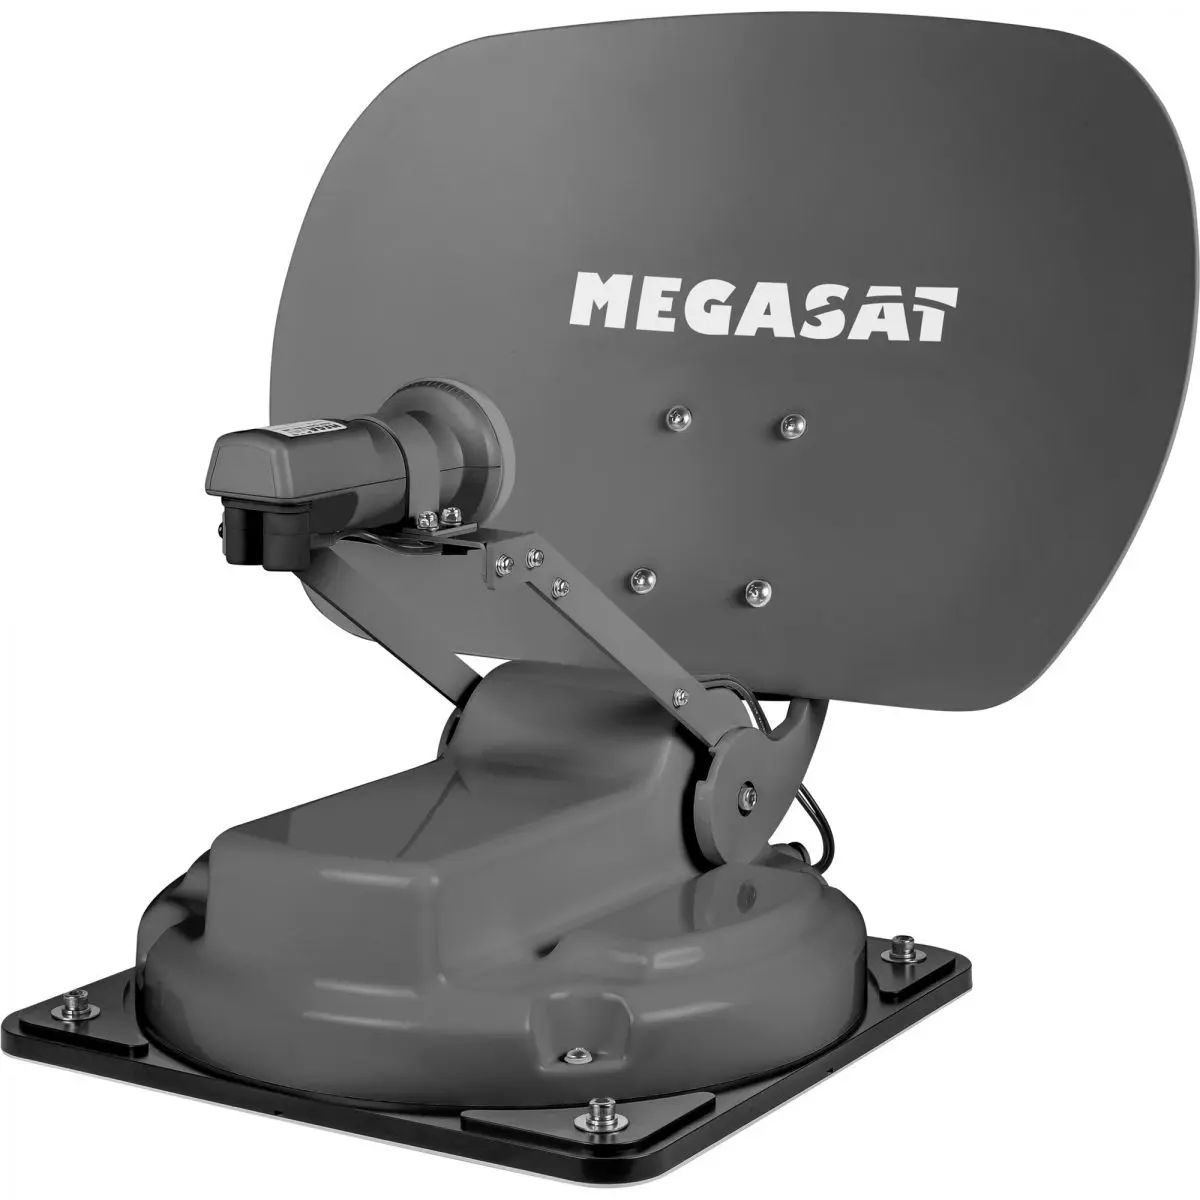 Megasat Caravanman Compact 3 műholdrendszer, grafit